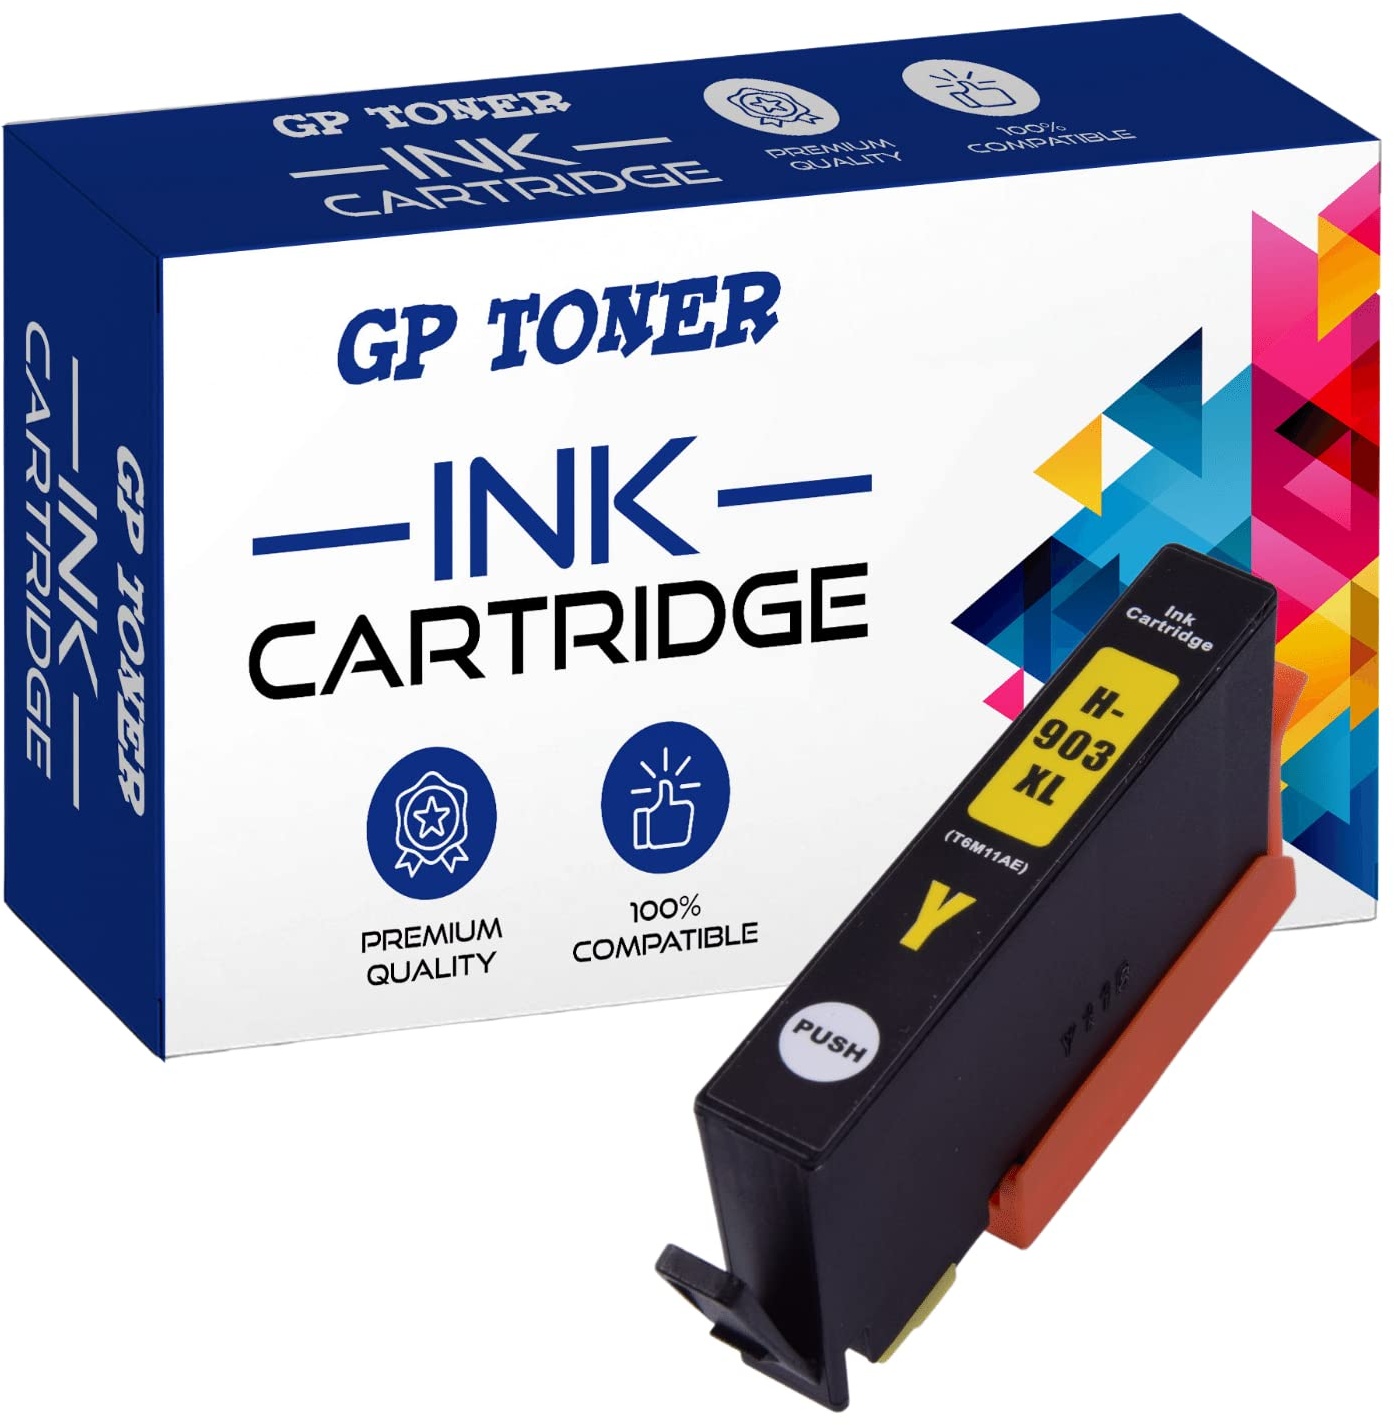 GP TONER Kompatibel Tintenpatrone als Ersatz für HP 903XL 903 XL Multipack Druckerpatronen für HP Officejet 6950 Pro 6970 6760 6978 6979 6965 6968 (Schwarz, Cyan, Magenta, Gelb)